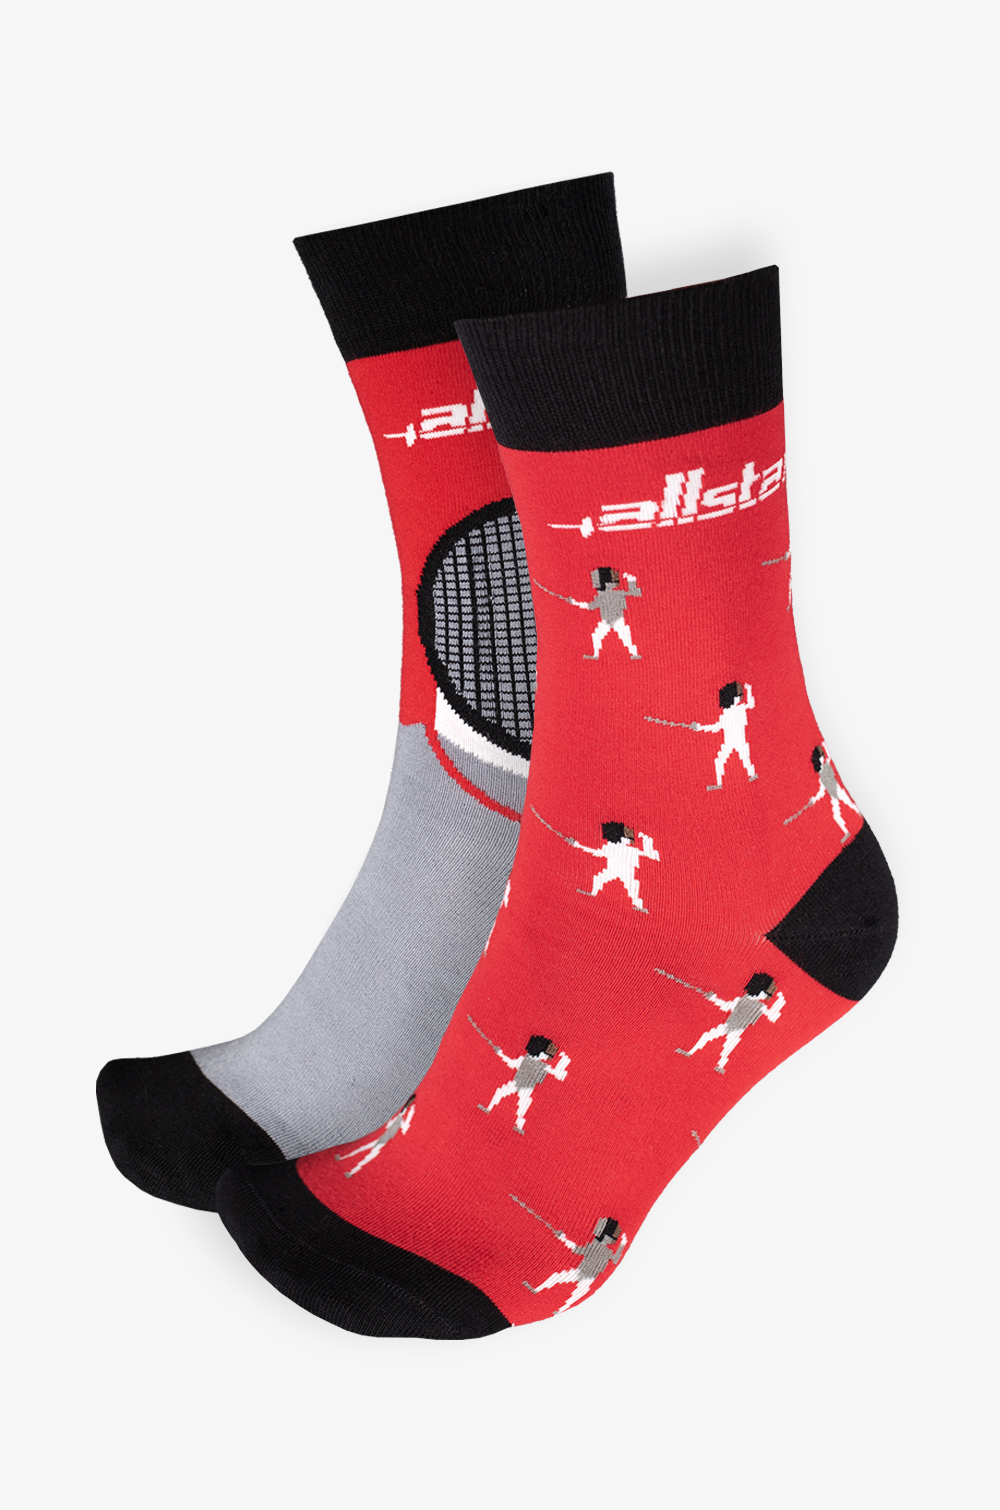 allstar Cotton Socks 2.0 (limited edition)